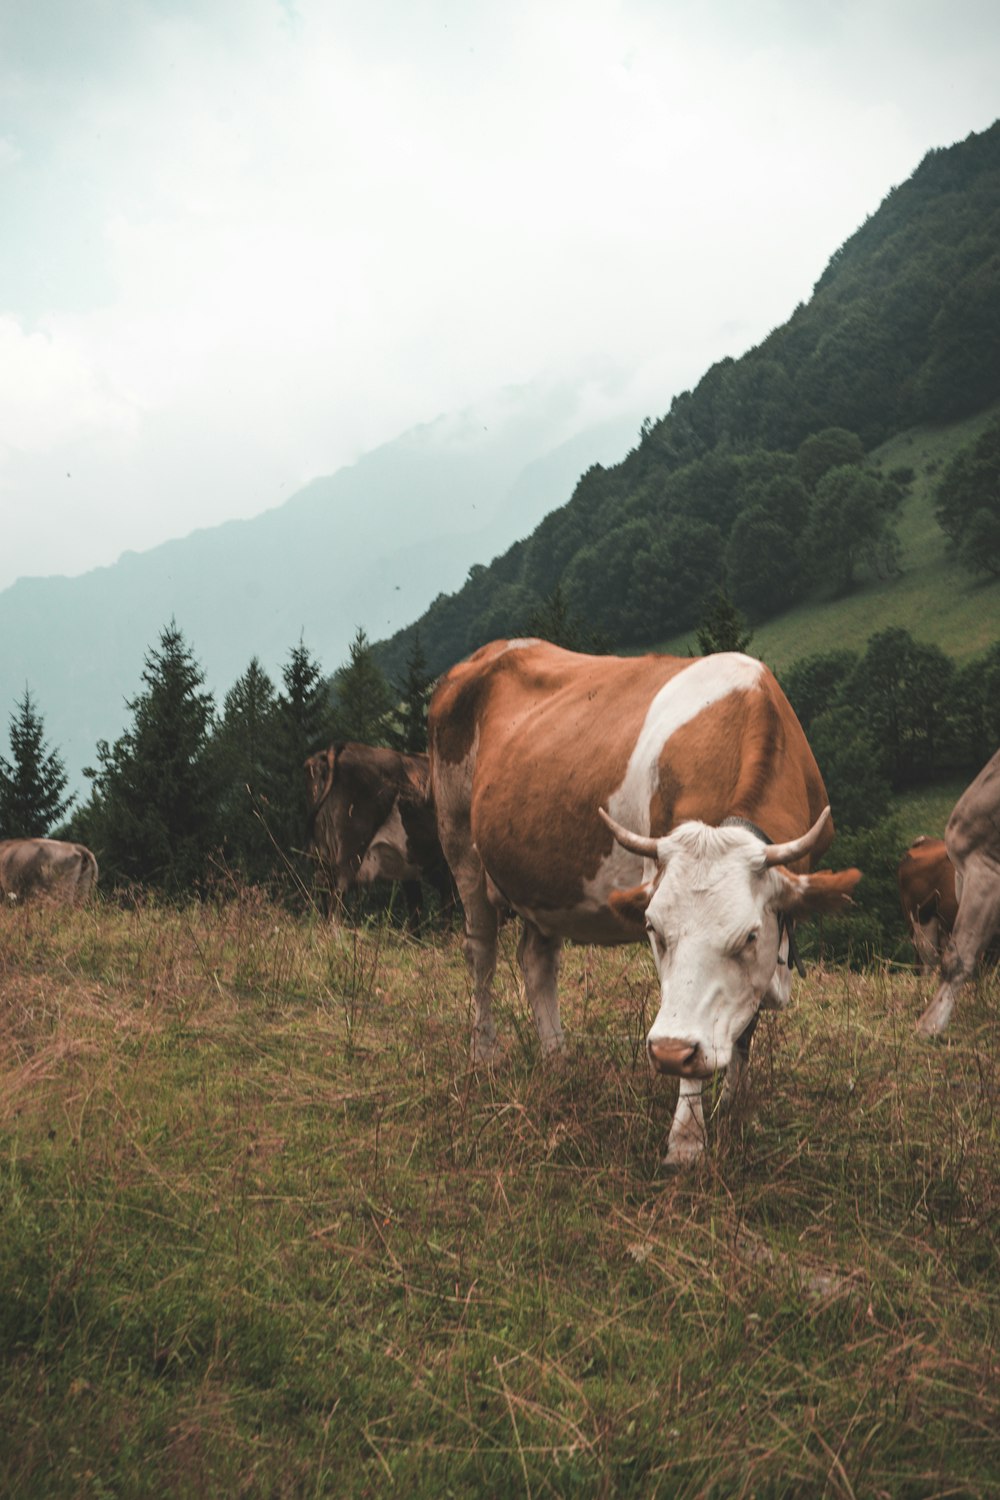 mucca marrone e bianca in piedi sull'erba